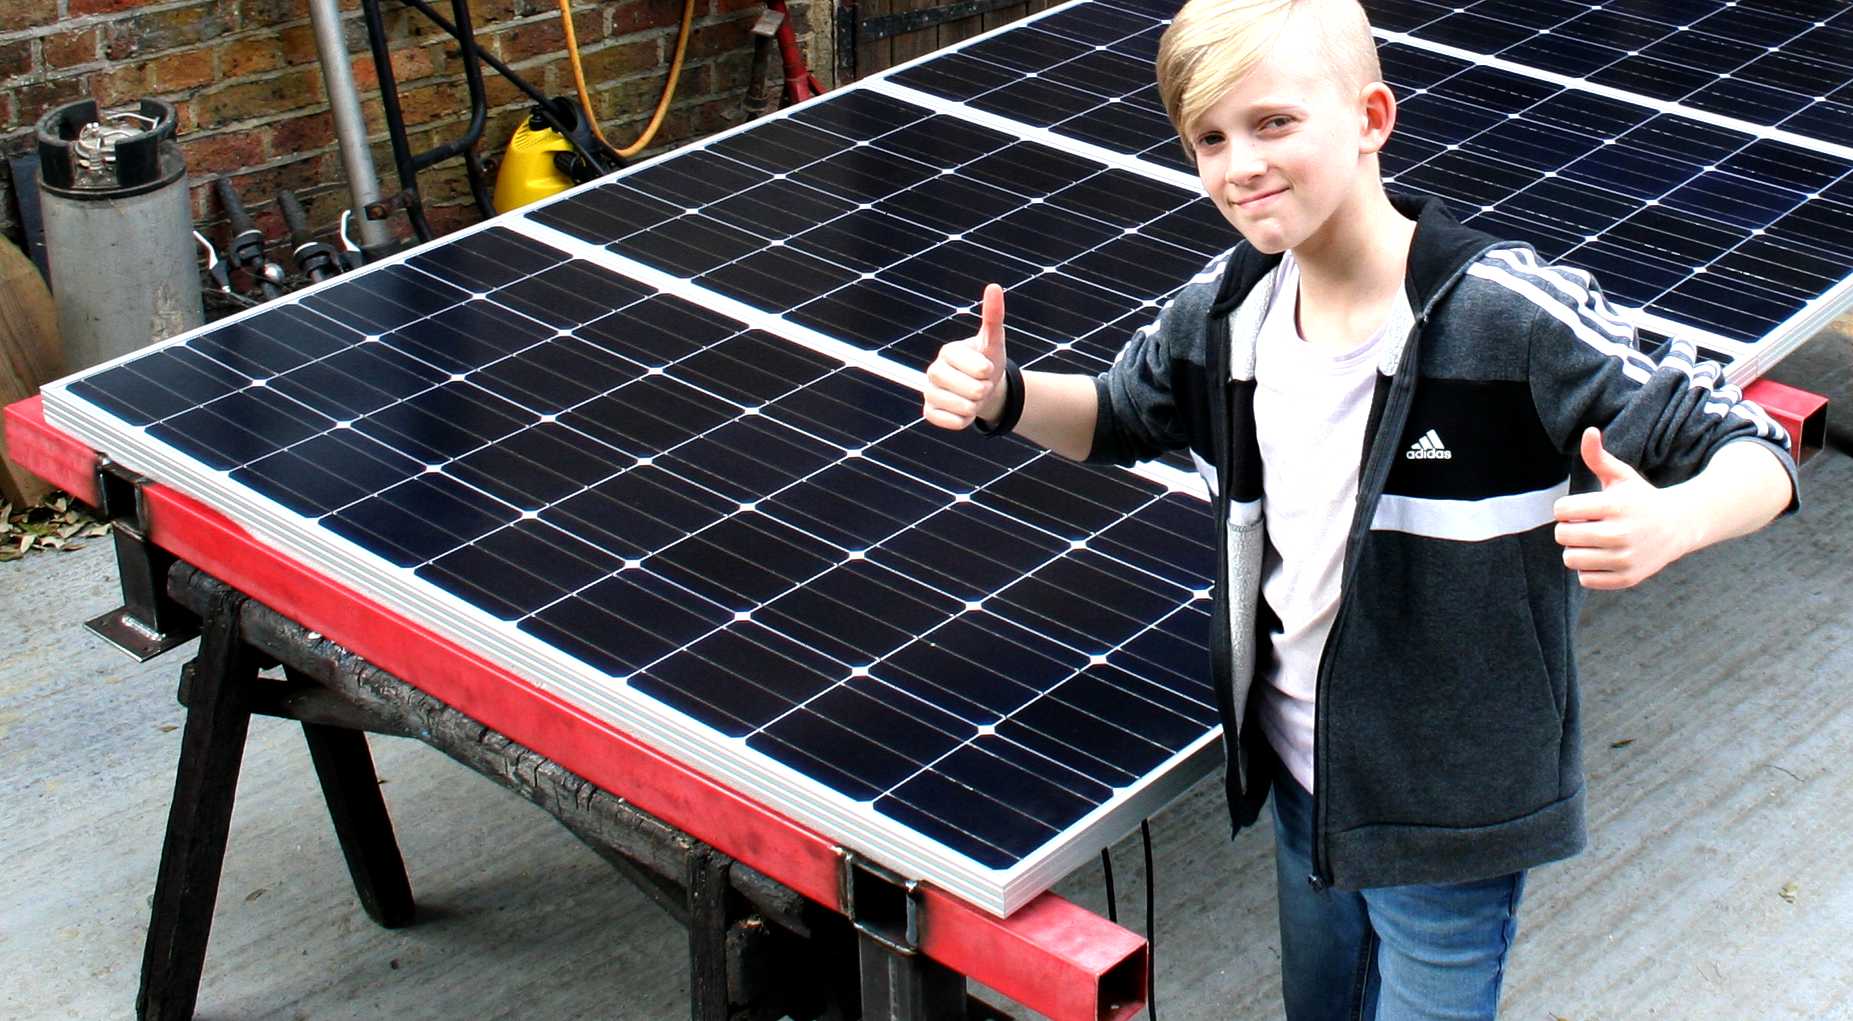 Ryan checks out a solar panel array